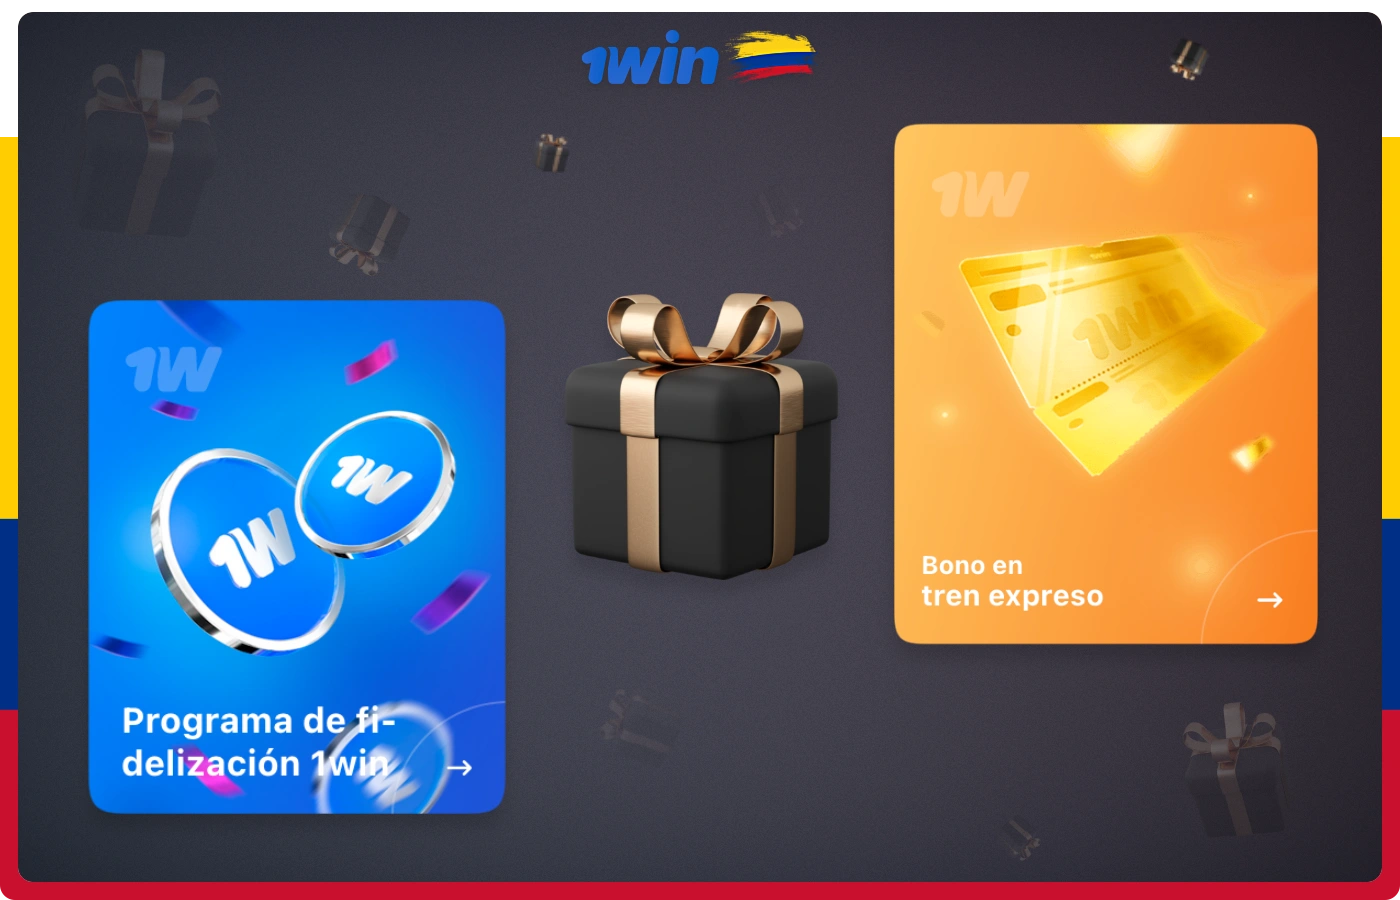 Todos los usuarios de 1win Colombia tienen acceso a un programa de fidelización y a una bonificación por gastos.